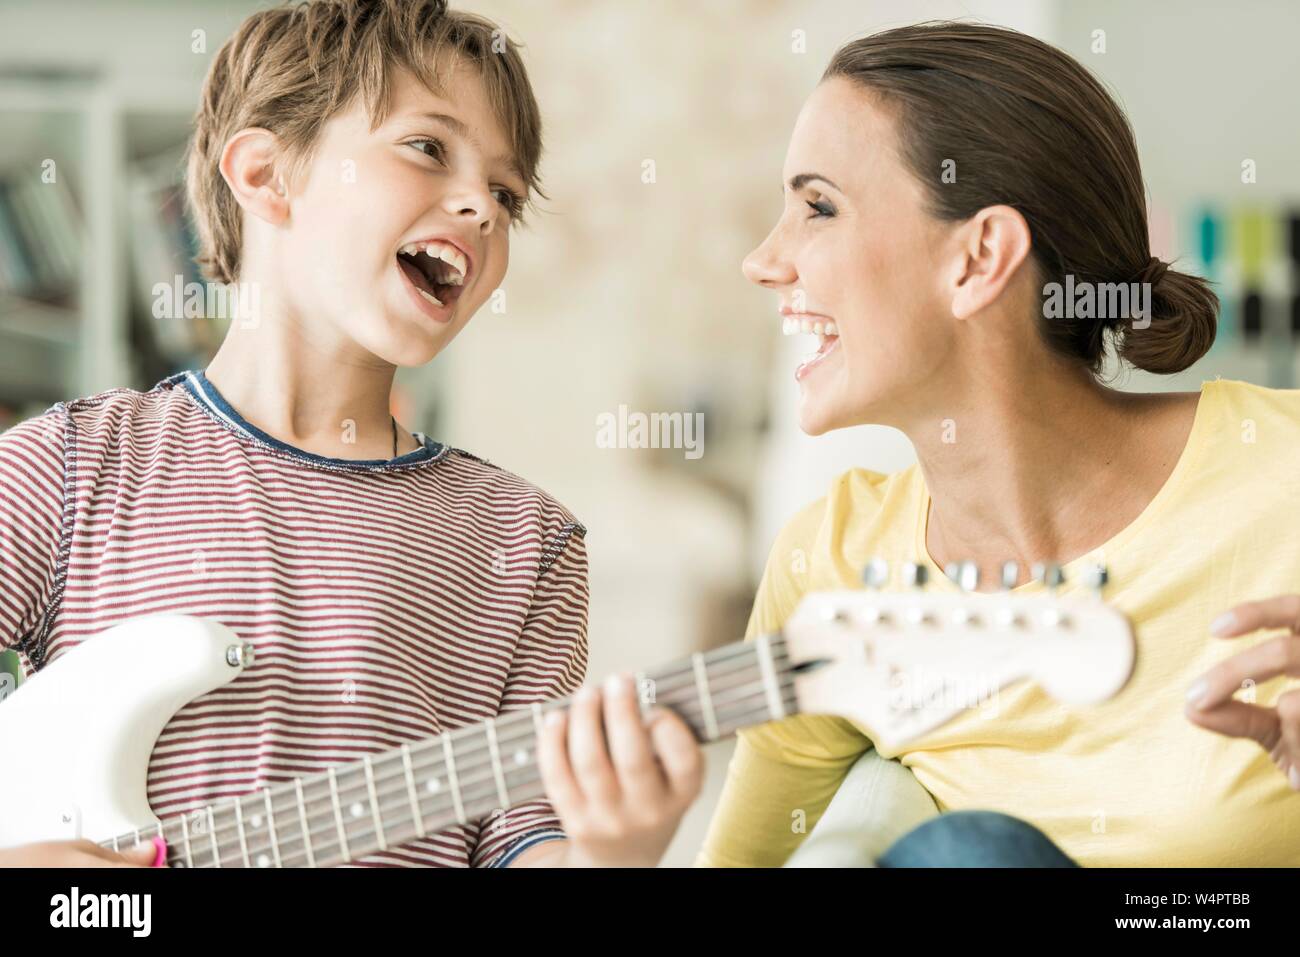 Mutter und Sohn gemeinsam Musik machen, beide singen und Sohn spielen, E-Gitarre, close-up, Lachen, Deutschland Stockfoto